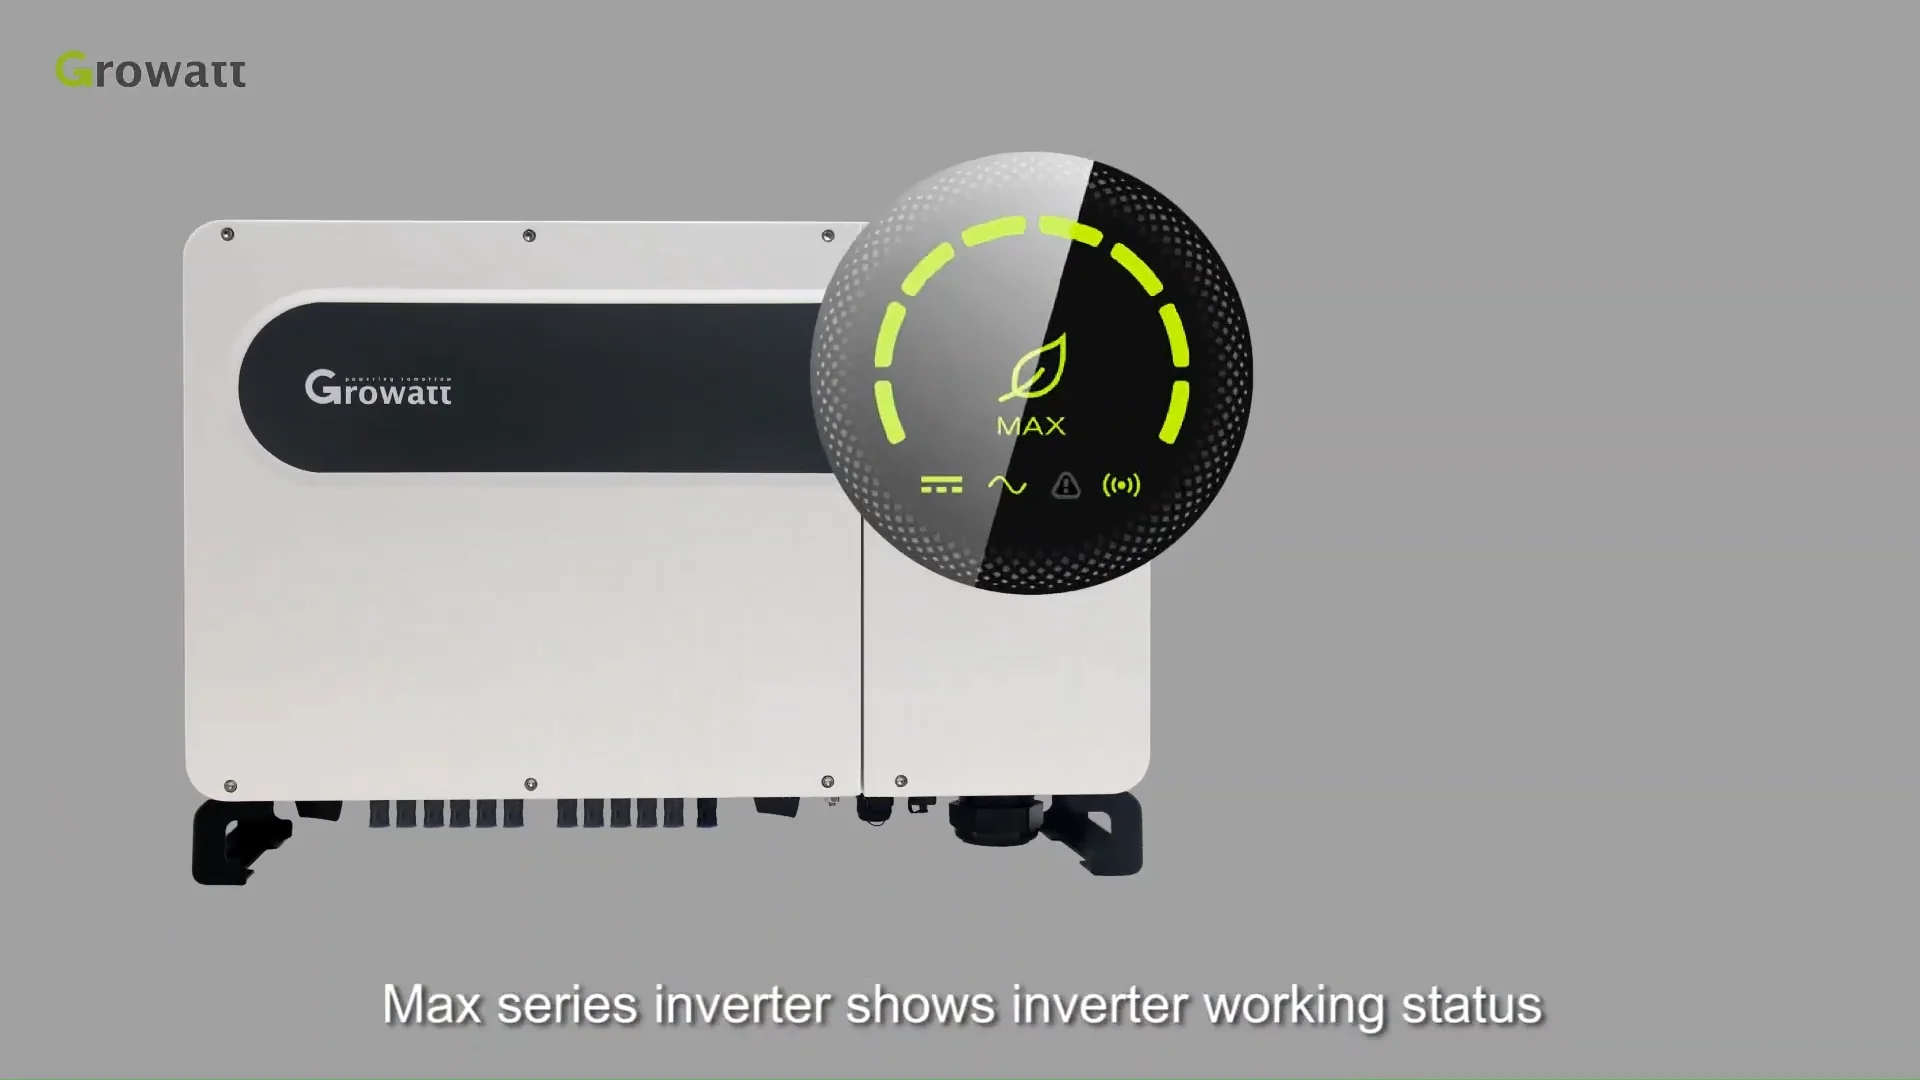 Growatt MAX 100-125KTL3-X LV On Grid Inverter 100-125KW - sunlink